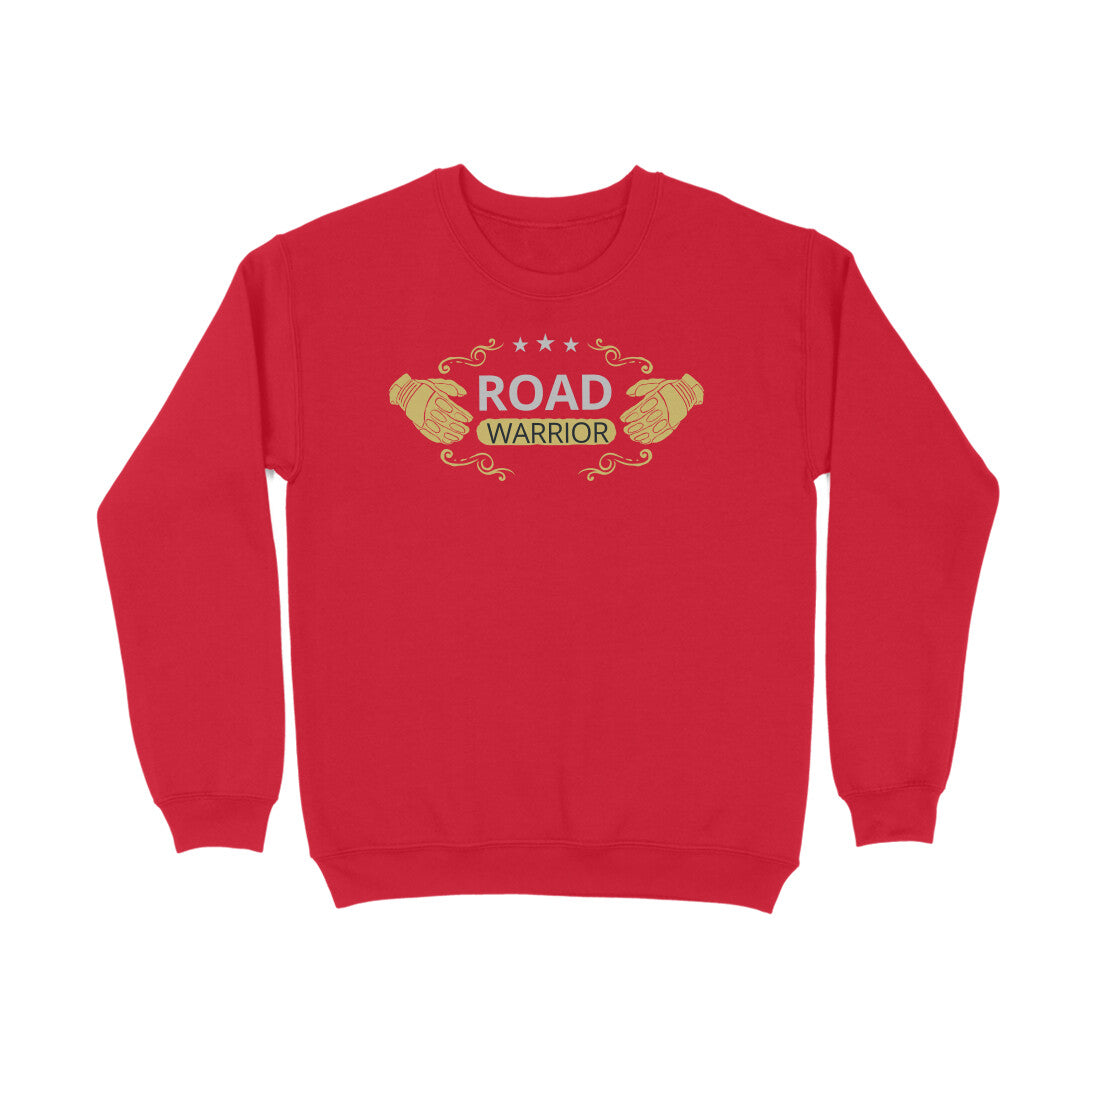 Bilkool Road Warrior Cotton Sweatshirt